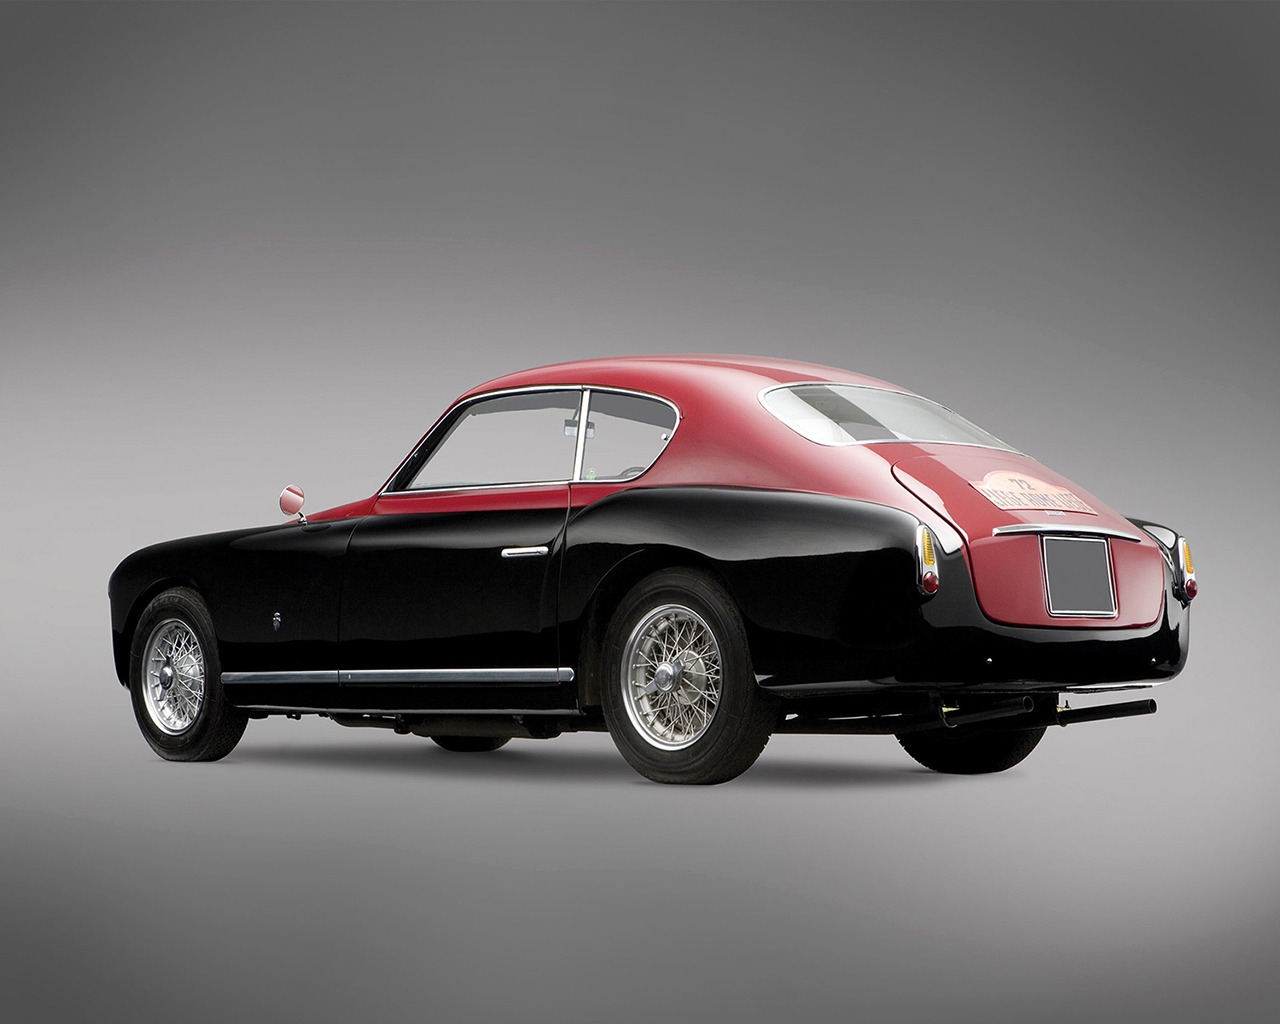 Ferrari 195 Rear 1950 for 1280 x 1024 resolution